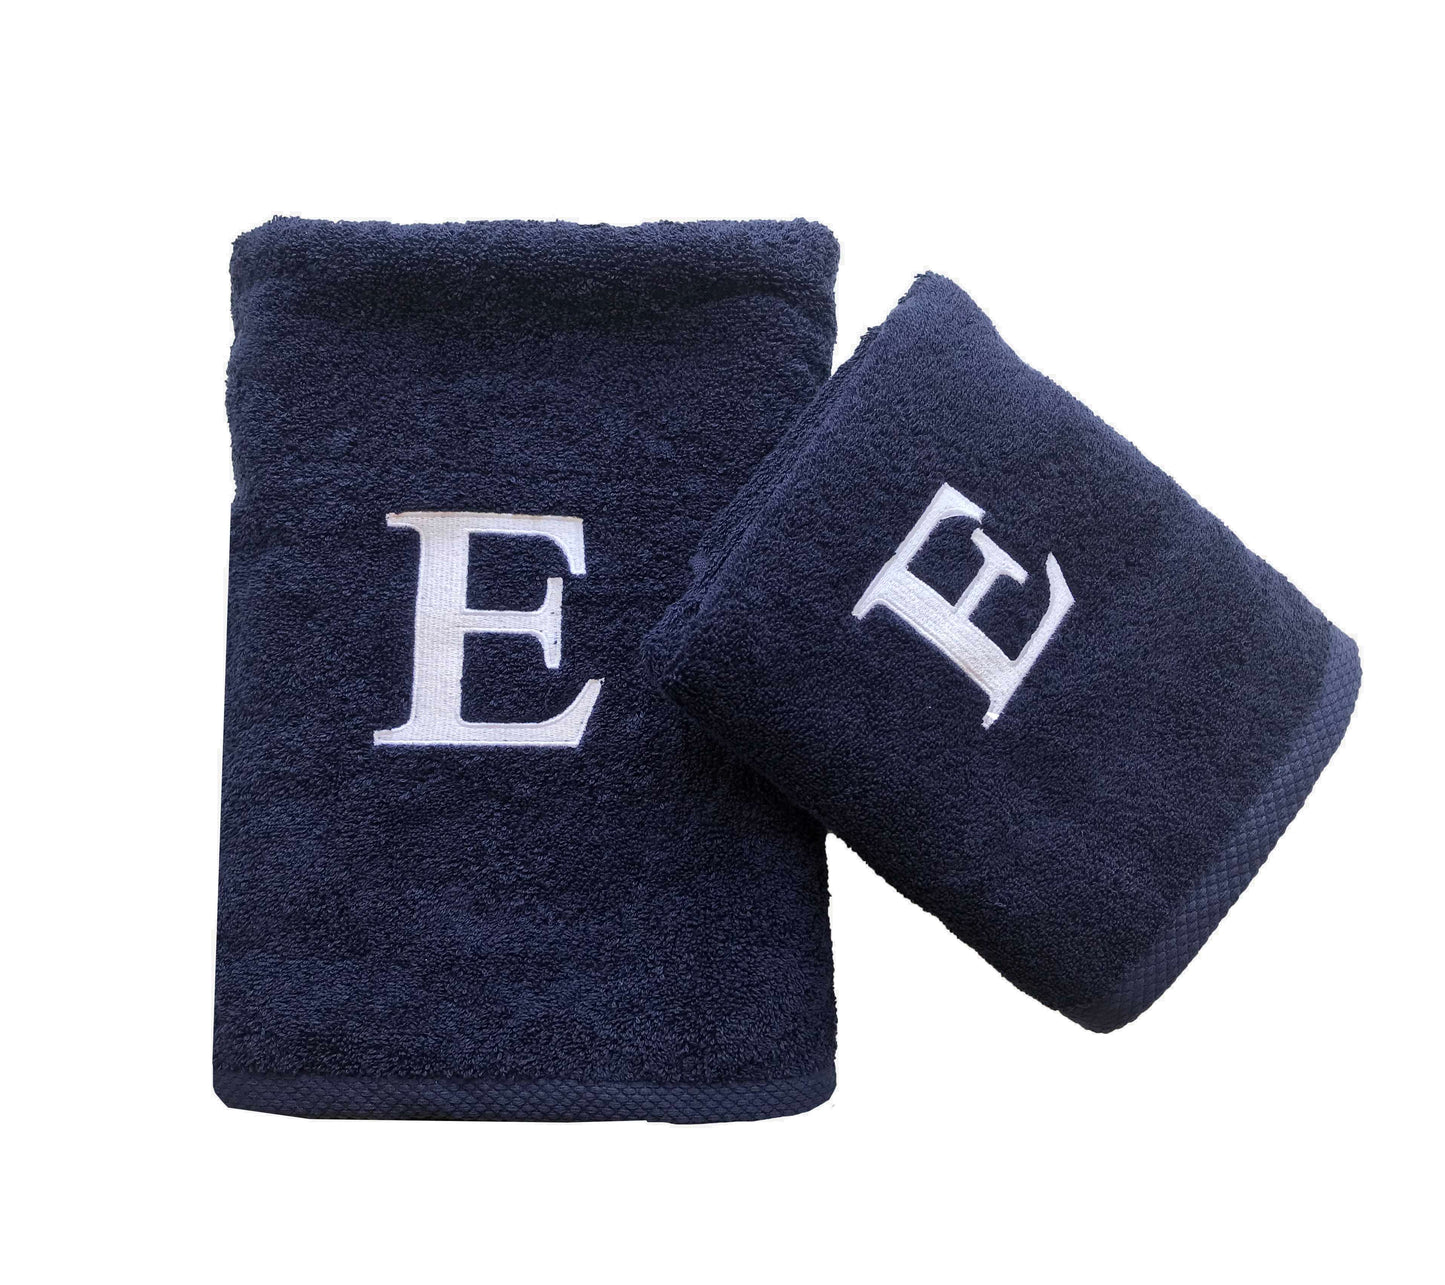 Premium Handtuch -  Mit edler Stickerei Buchstabe "E" - Vielseitig, Nachhaltig, Saugstark & Schnelltrocknend - 100% Baumwolle LMS-6642 Marinenblau